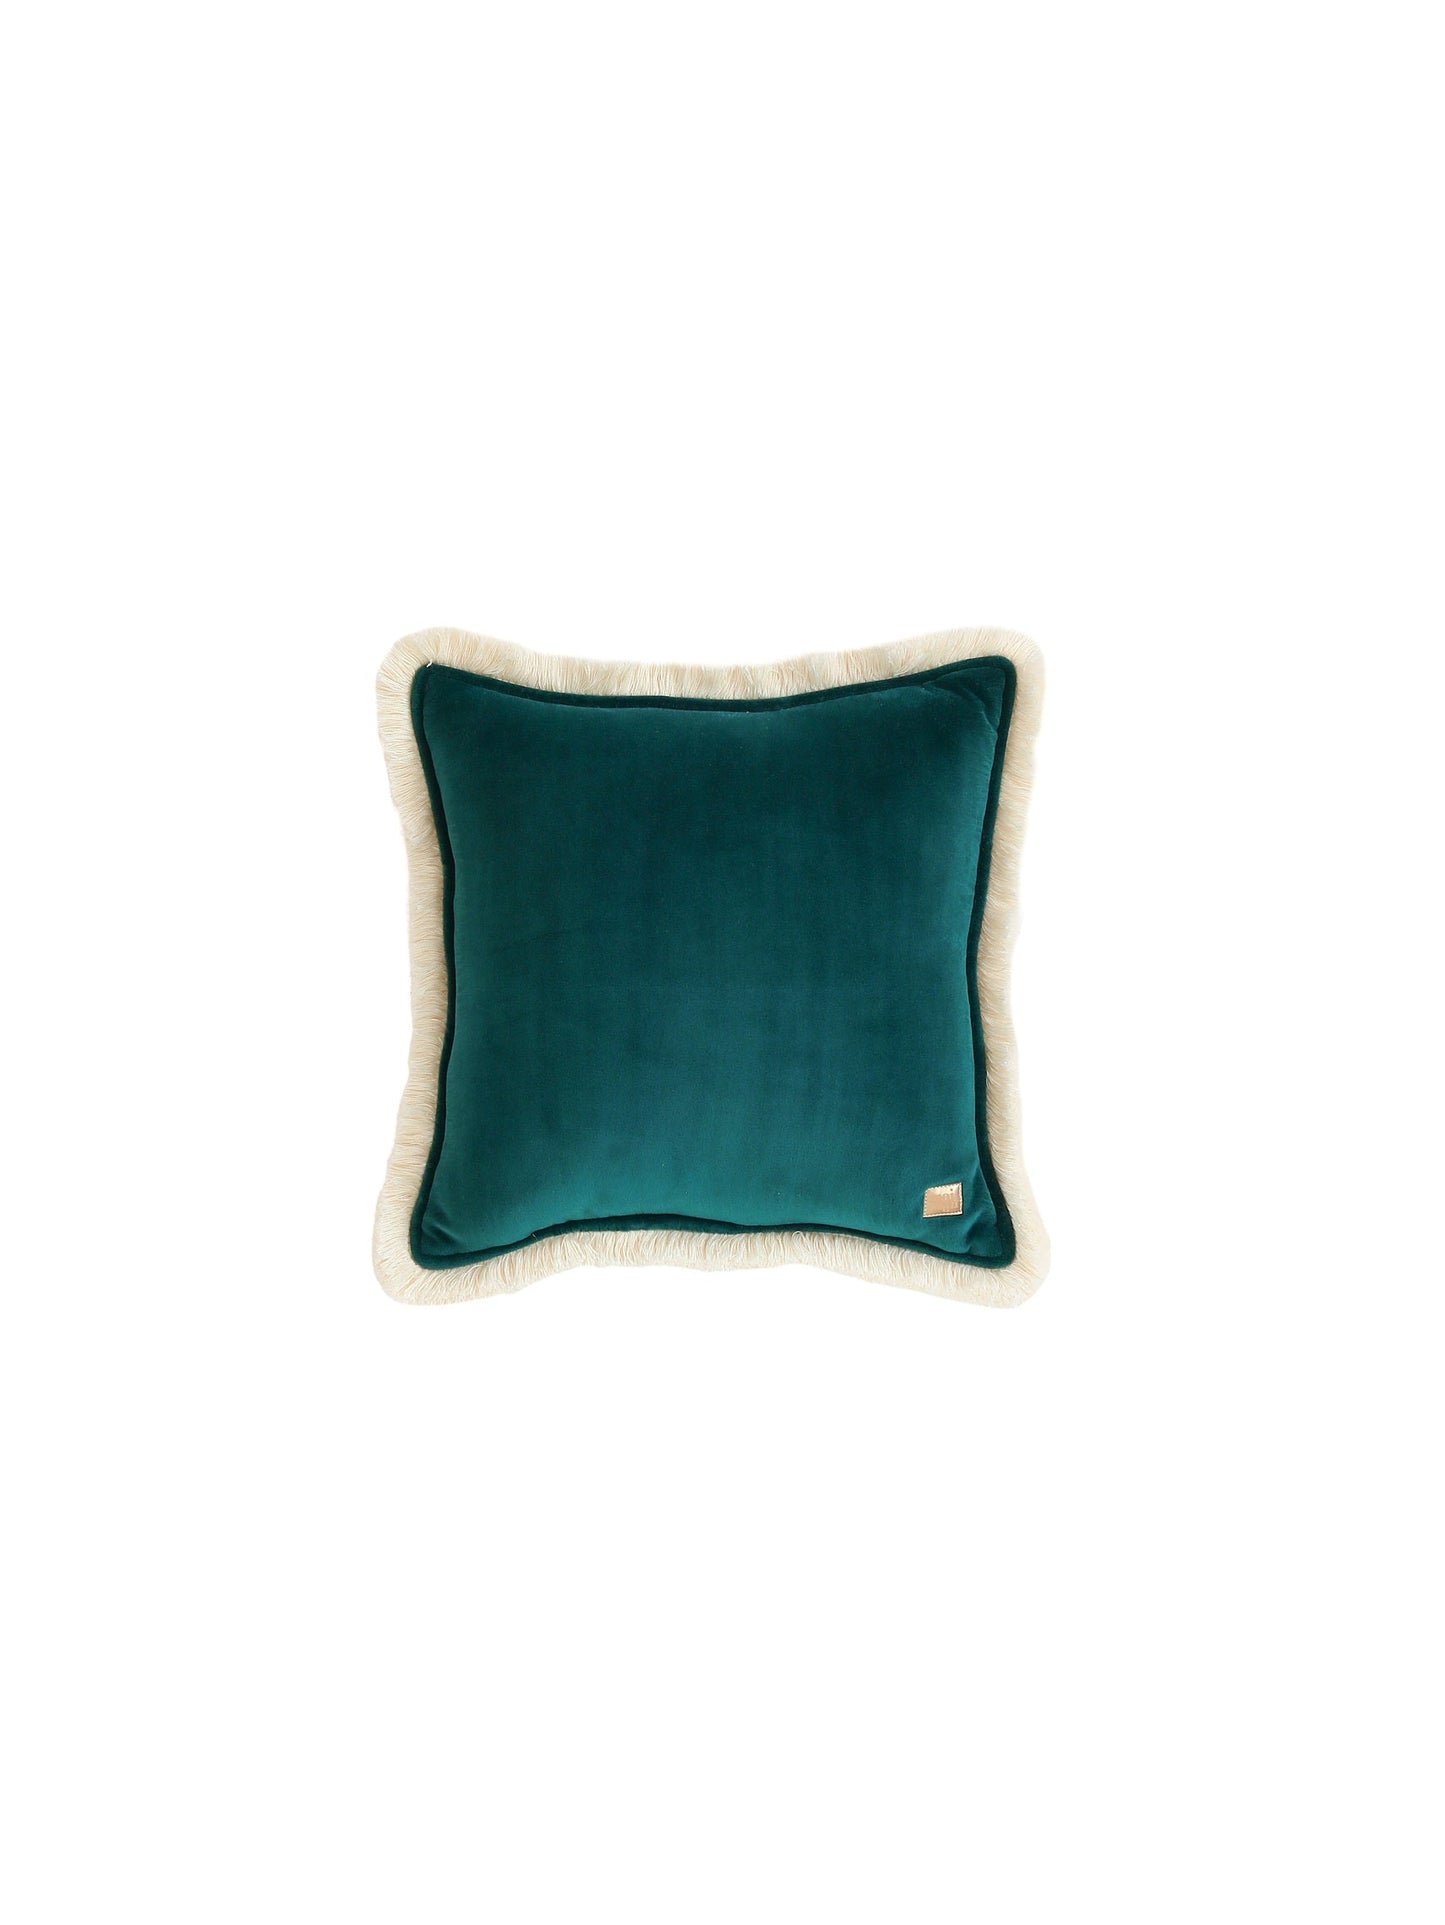 Soft Velvet "Emerald" Pillow with Fringe